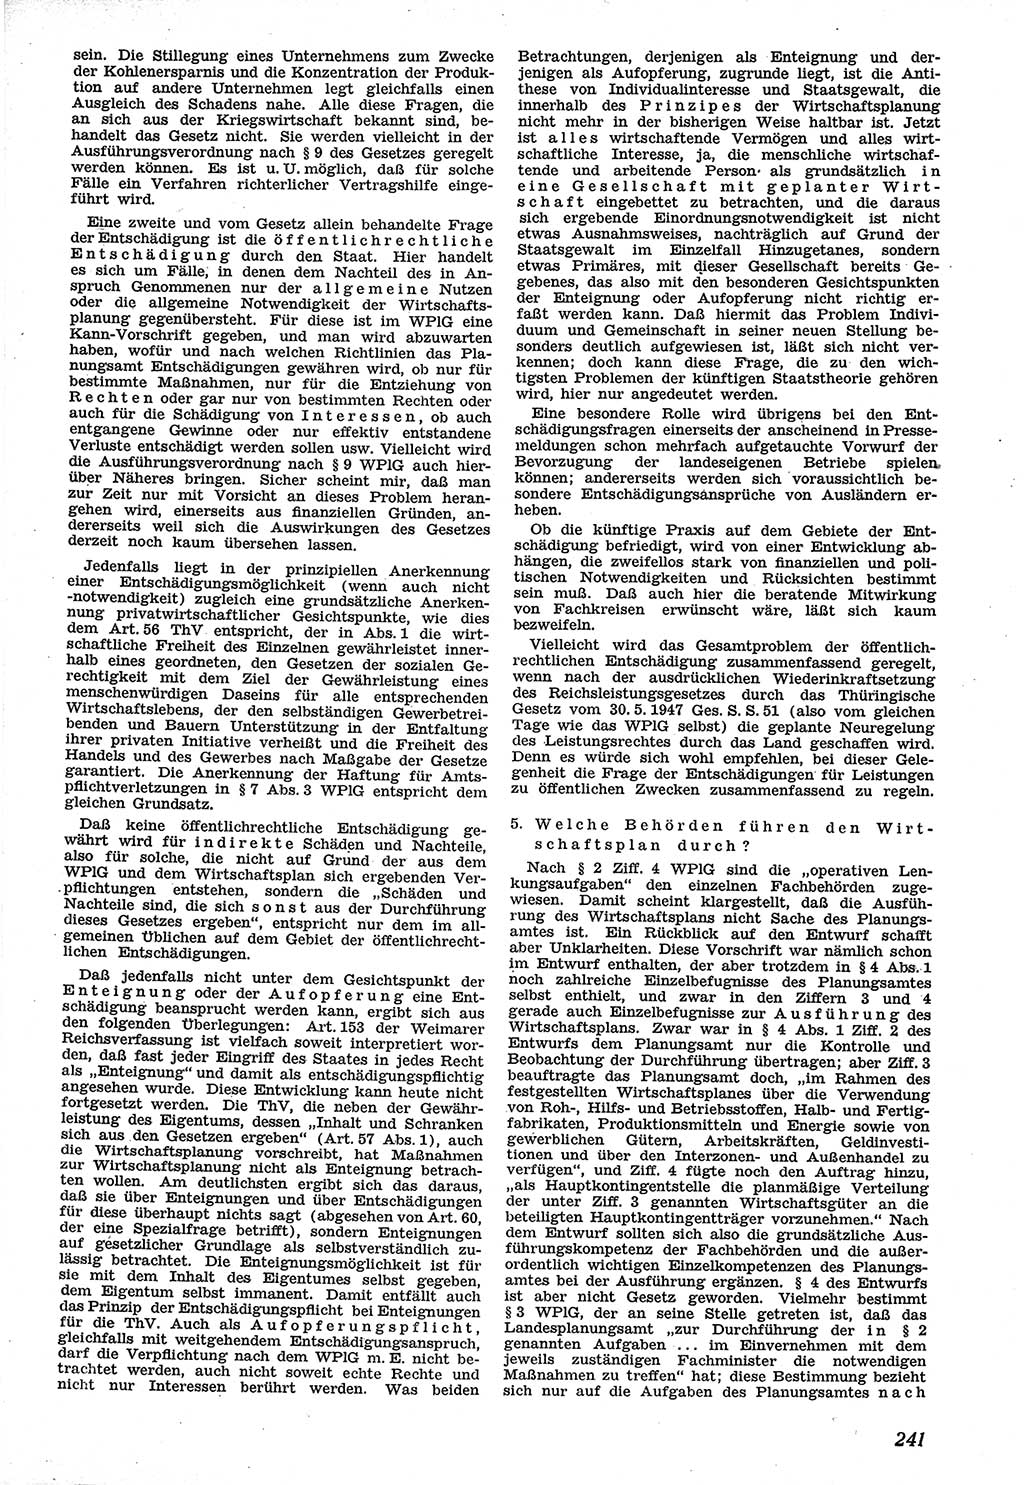 Neue Justiz (NJ), Zeitschrift für Recht und Rechtswissenschaft [Sowjetische Besatzungszone (SBZ) Deutschland], 1. Jahrgang 1947, Seite 241 (NJ SBZ Dtl. 1947, S. 241)